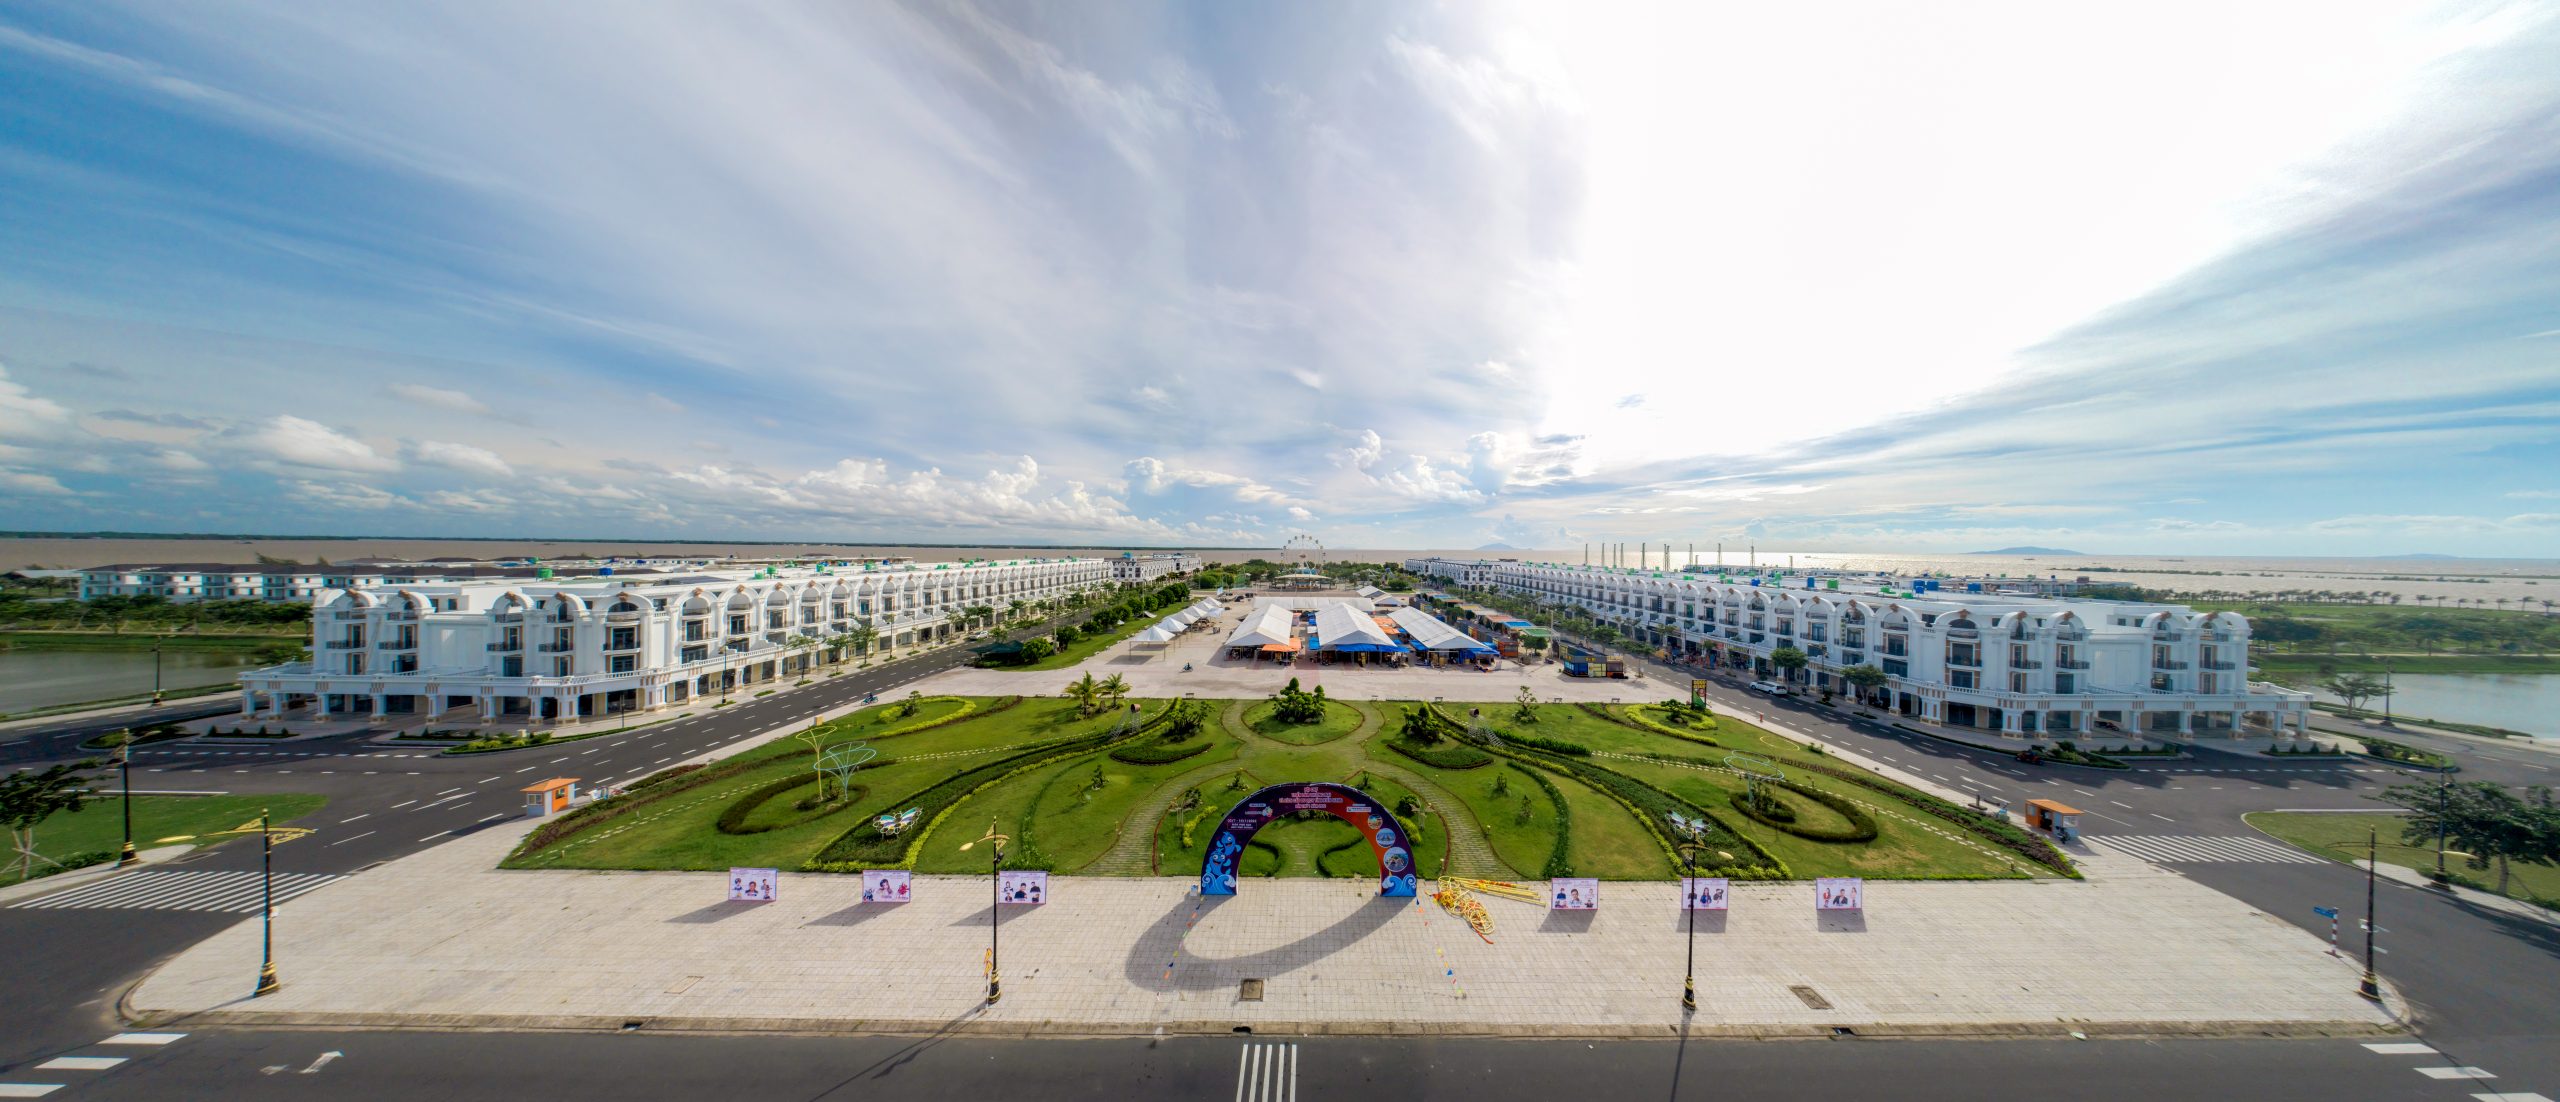 Hội chợ Triển lãm Thương mại và Kích cầu Du lịch tỉnh Kiên Giang lần thứ 1 năm 2022